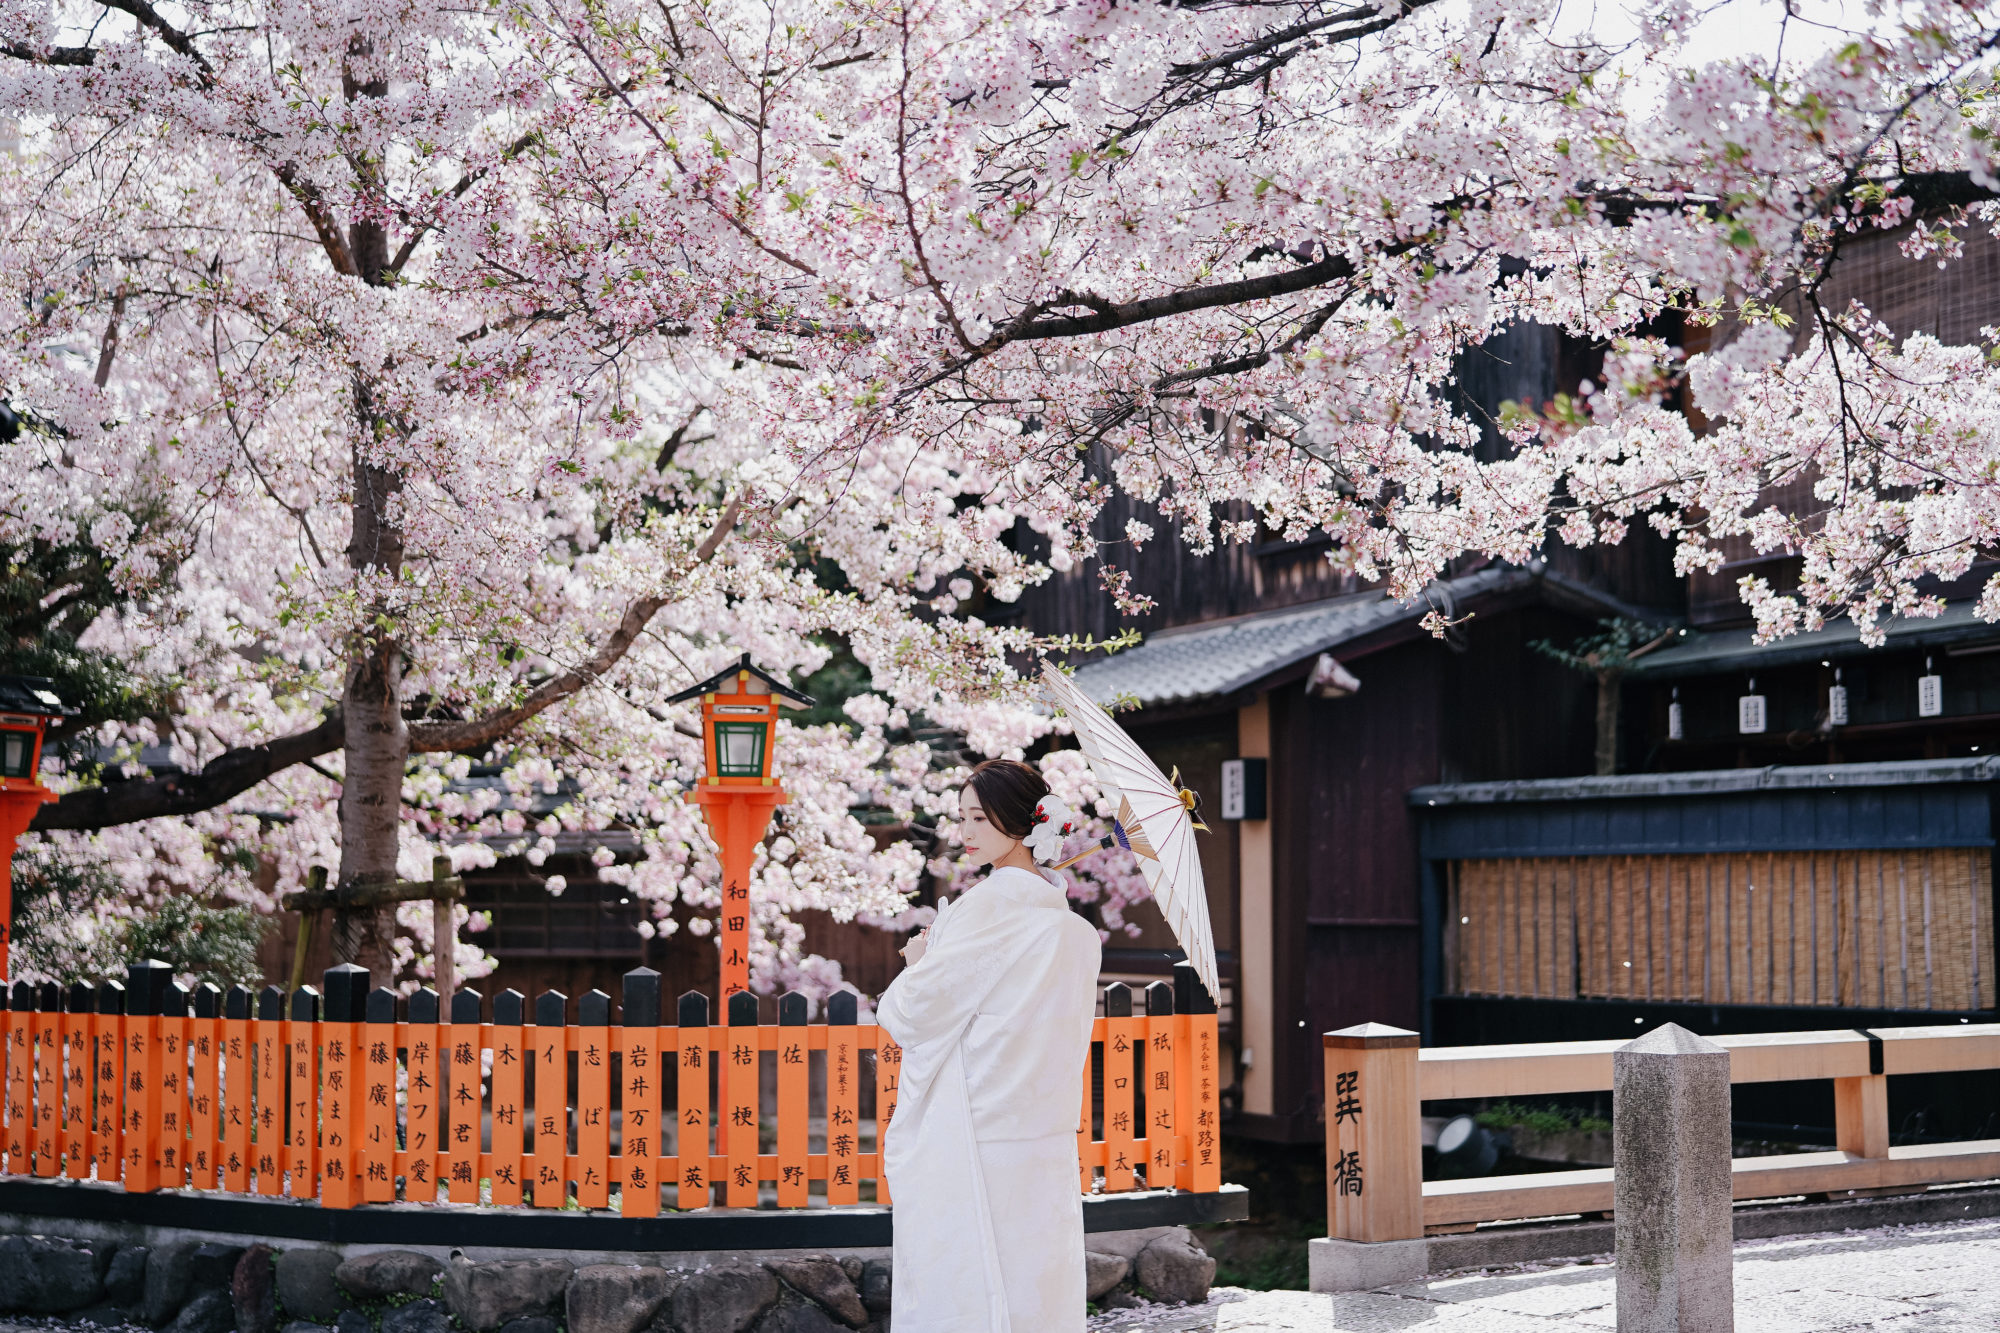 人気の前撮りロケーション「京都祇園」で、欄干と桜の前撮り/フォトウェディング。